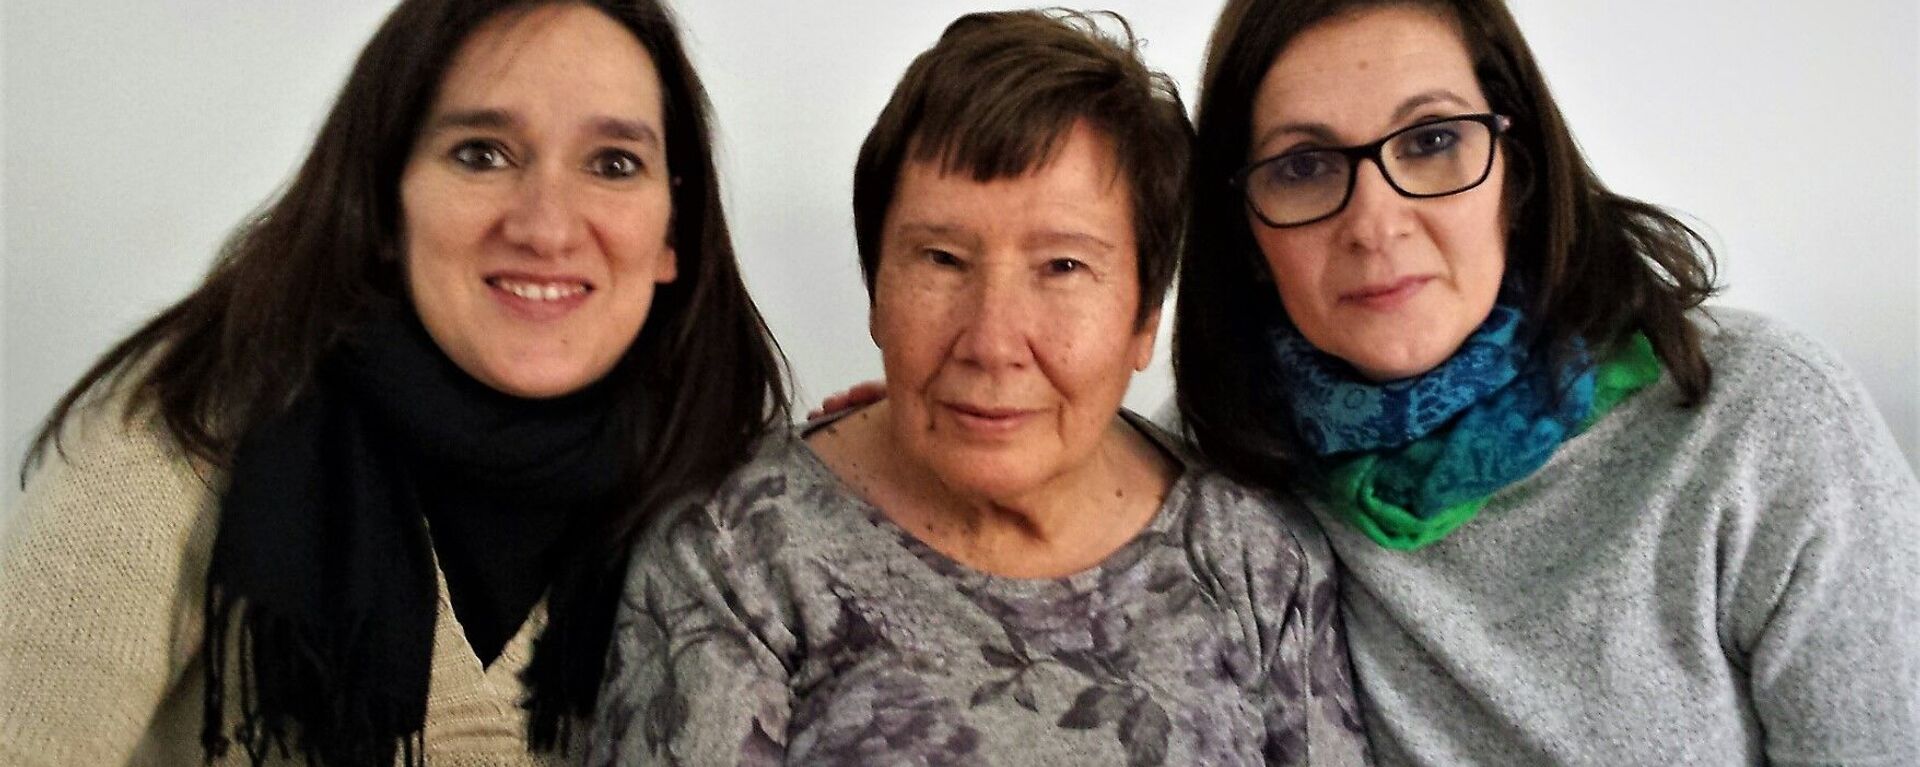 María Jesús Leal, fallecida de cáncer durante el COVID-19, con sus dos hijas - Sputnik Mundo, 1920, 21.10.2020